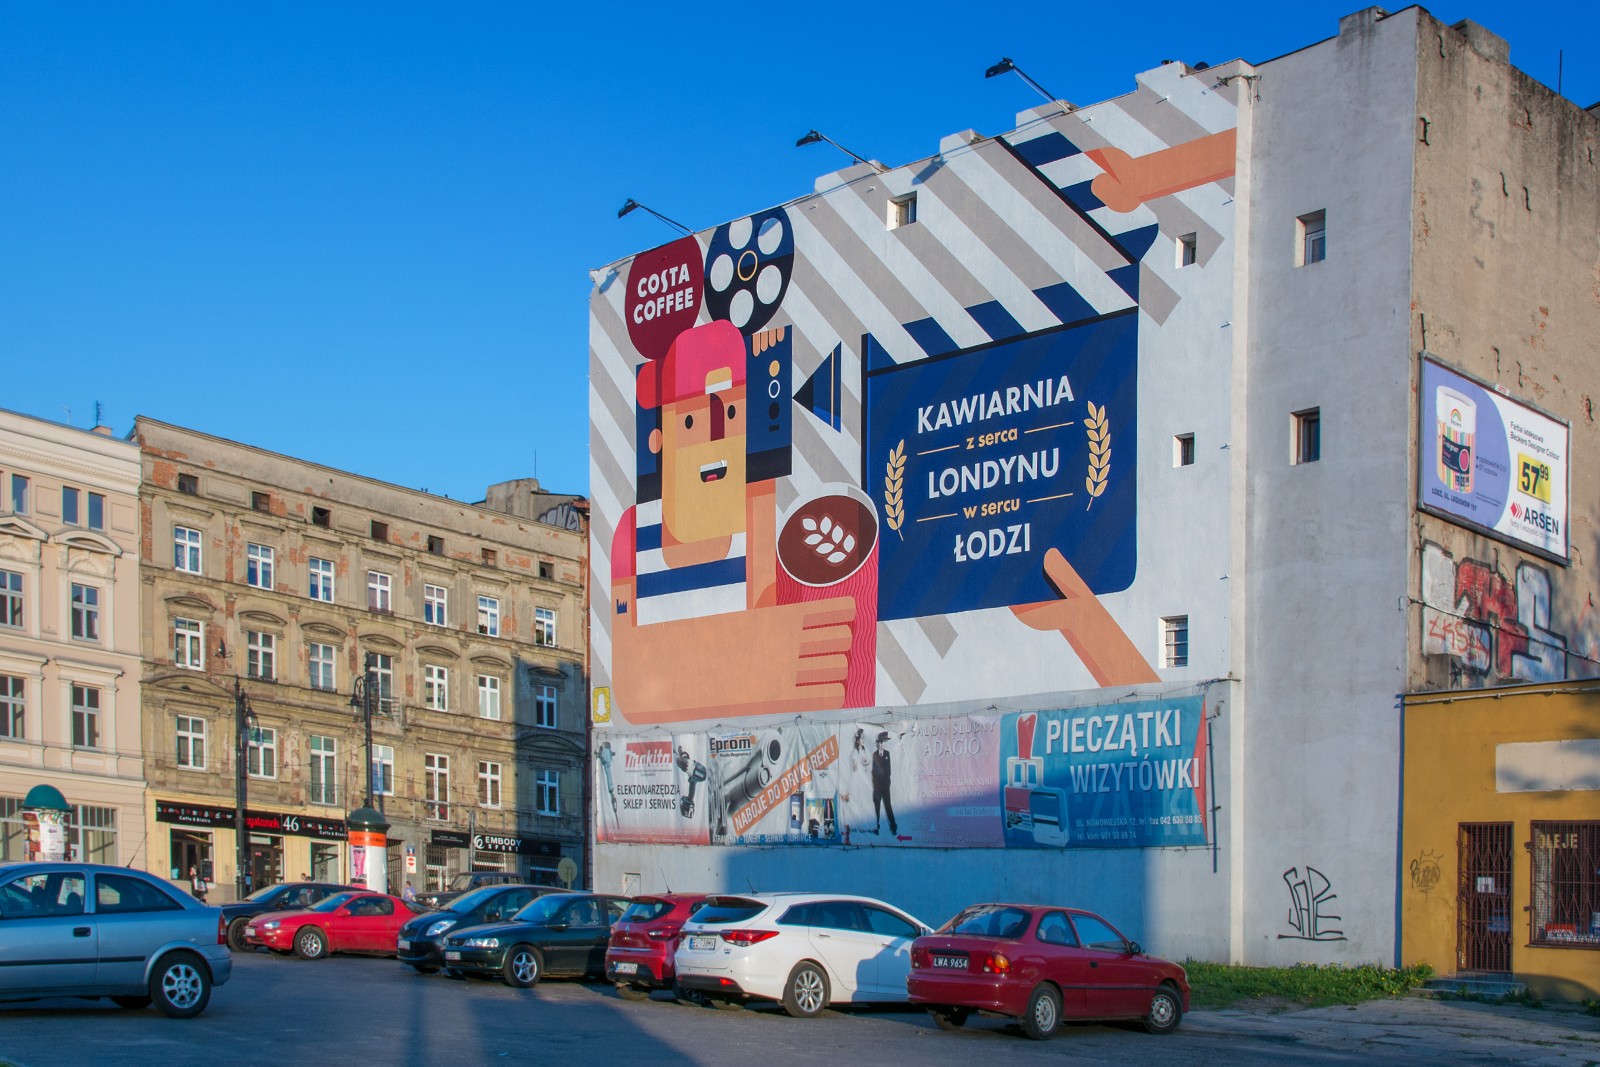 Mural namalowany dla marki Costa Coffee na ulicy Nowomiejskiej 12 w Łodzi | kampania murali dla Costa Coffee - Polscy ilustratorzy | Portfolio